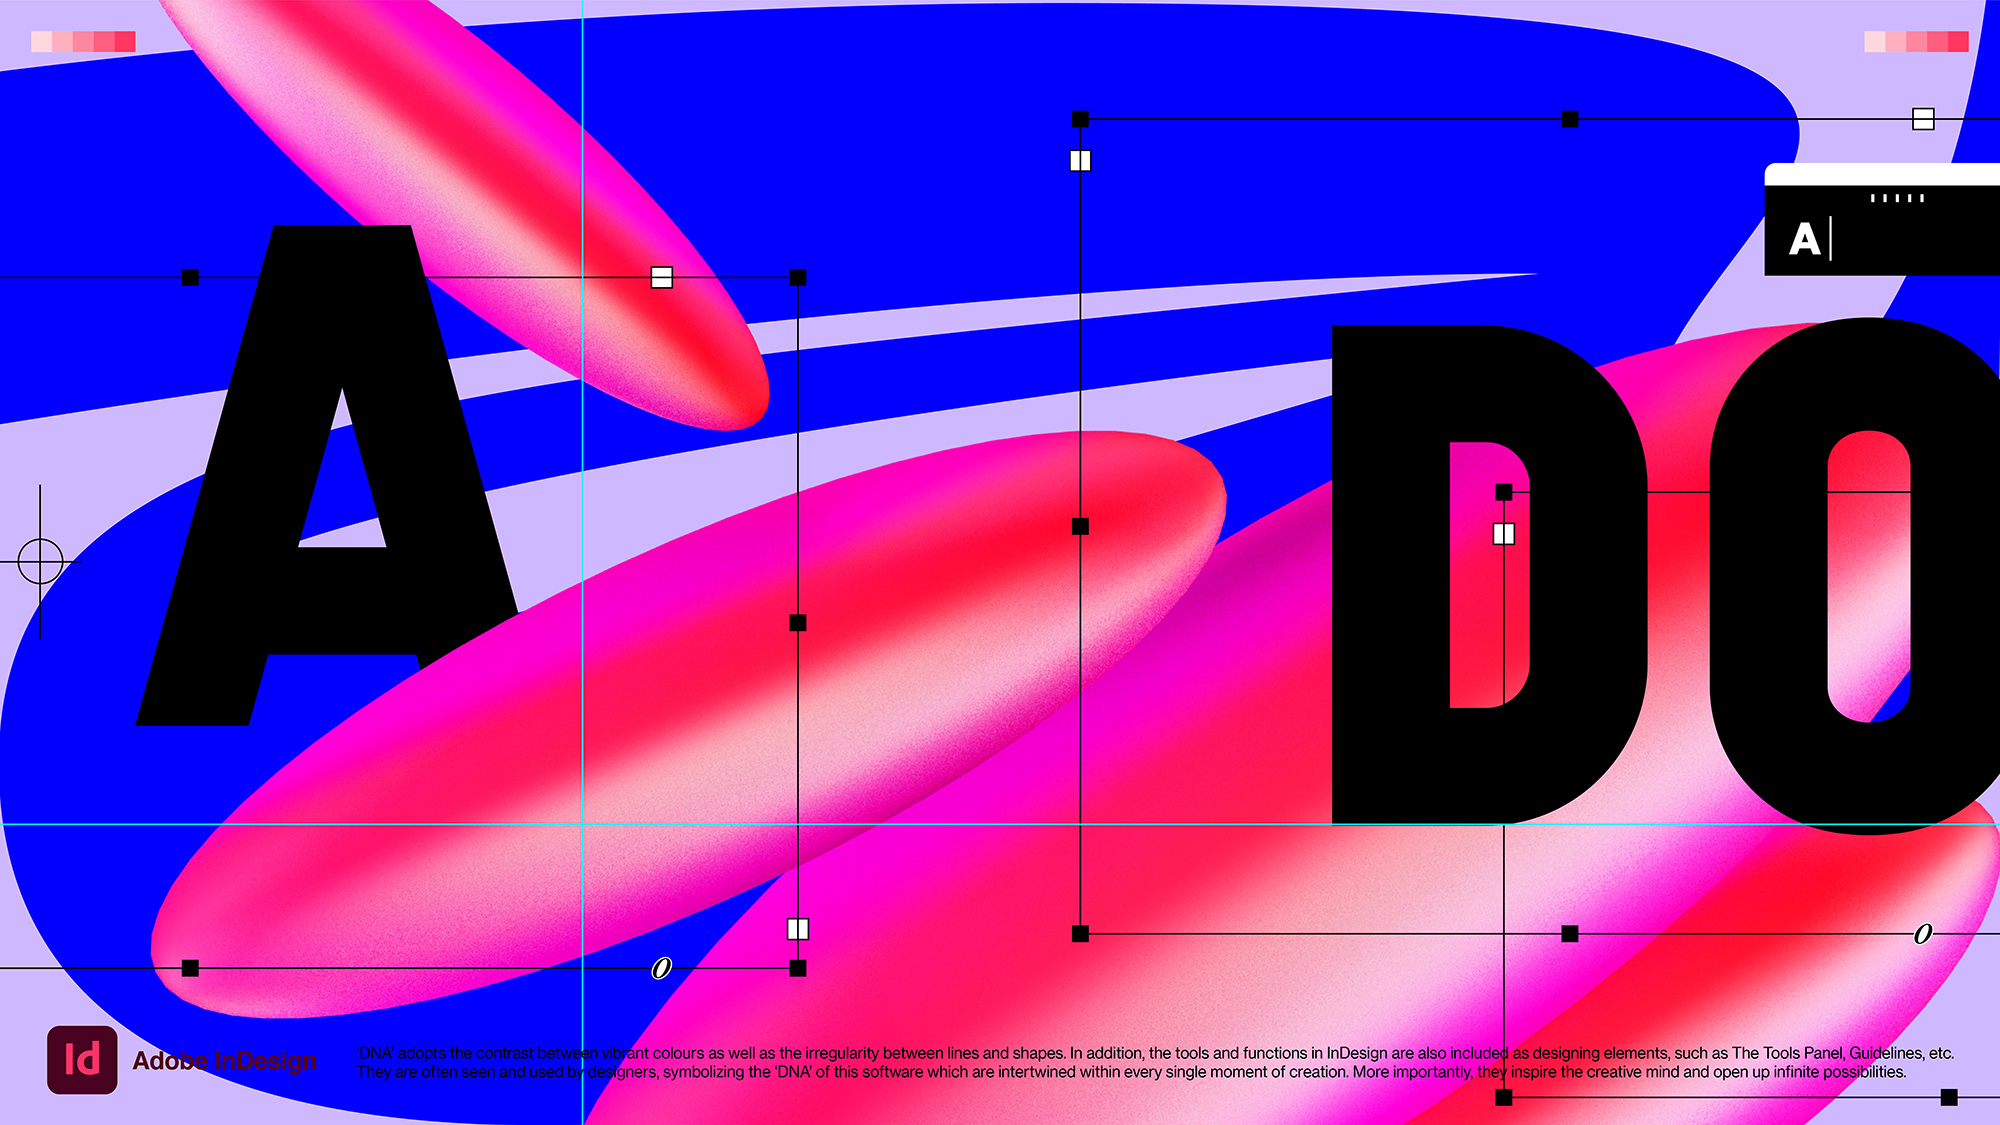 为Adobe InDesign 打造的多彩 DNA 视觉设计